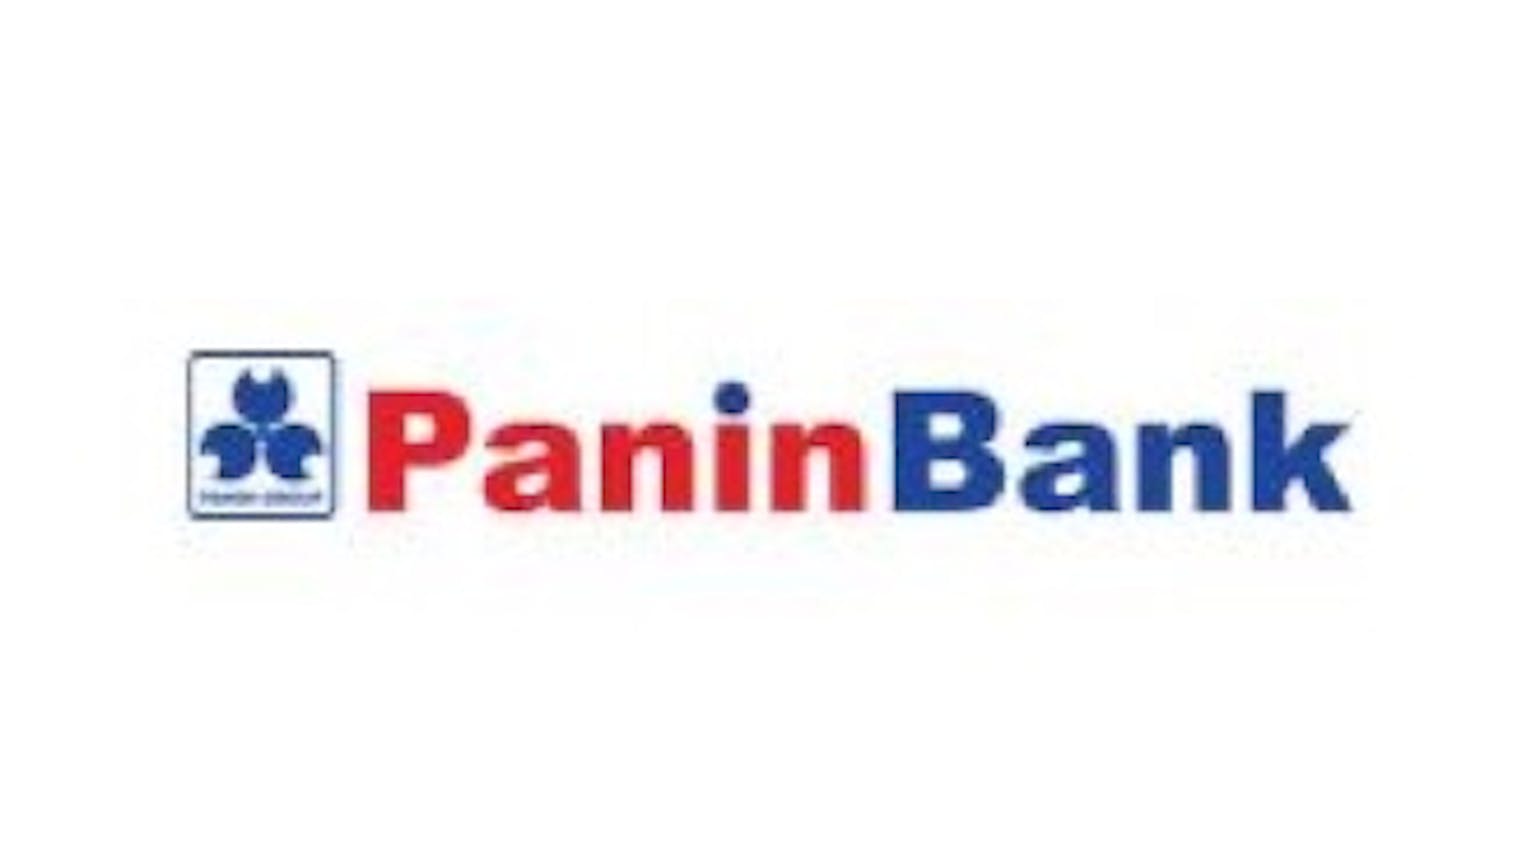 Pan Dollar Panin Bank